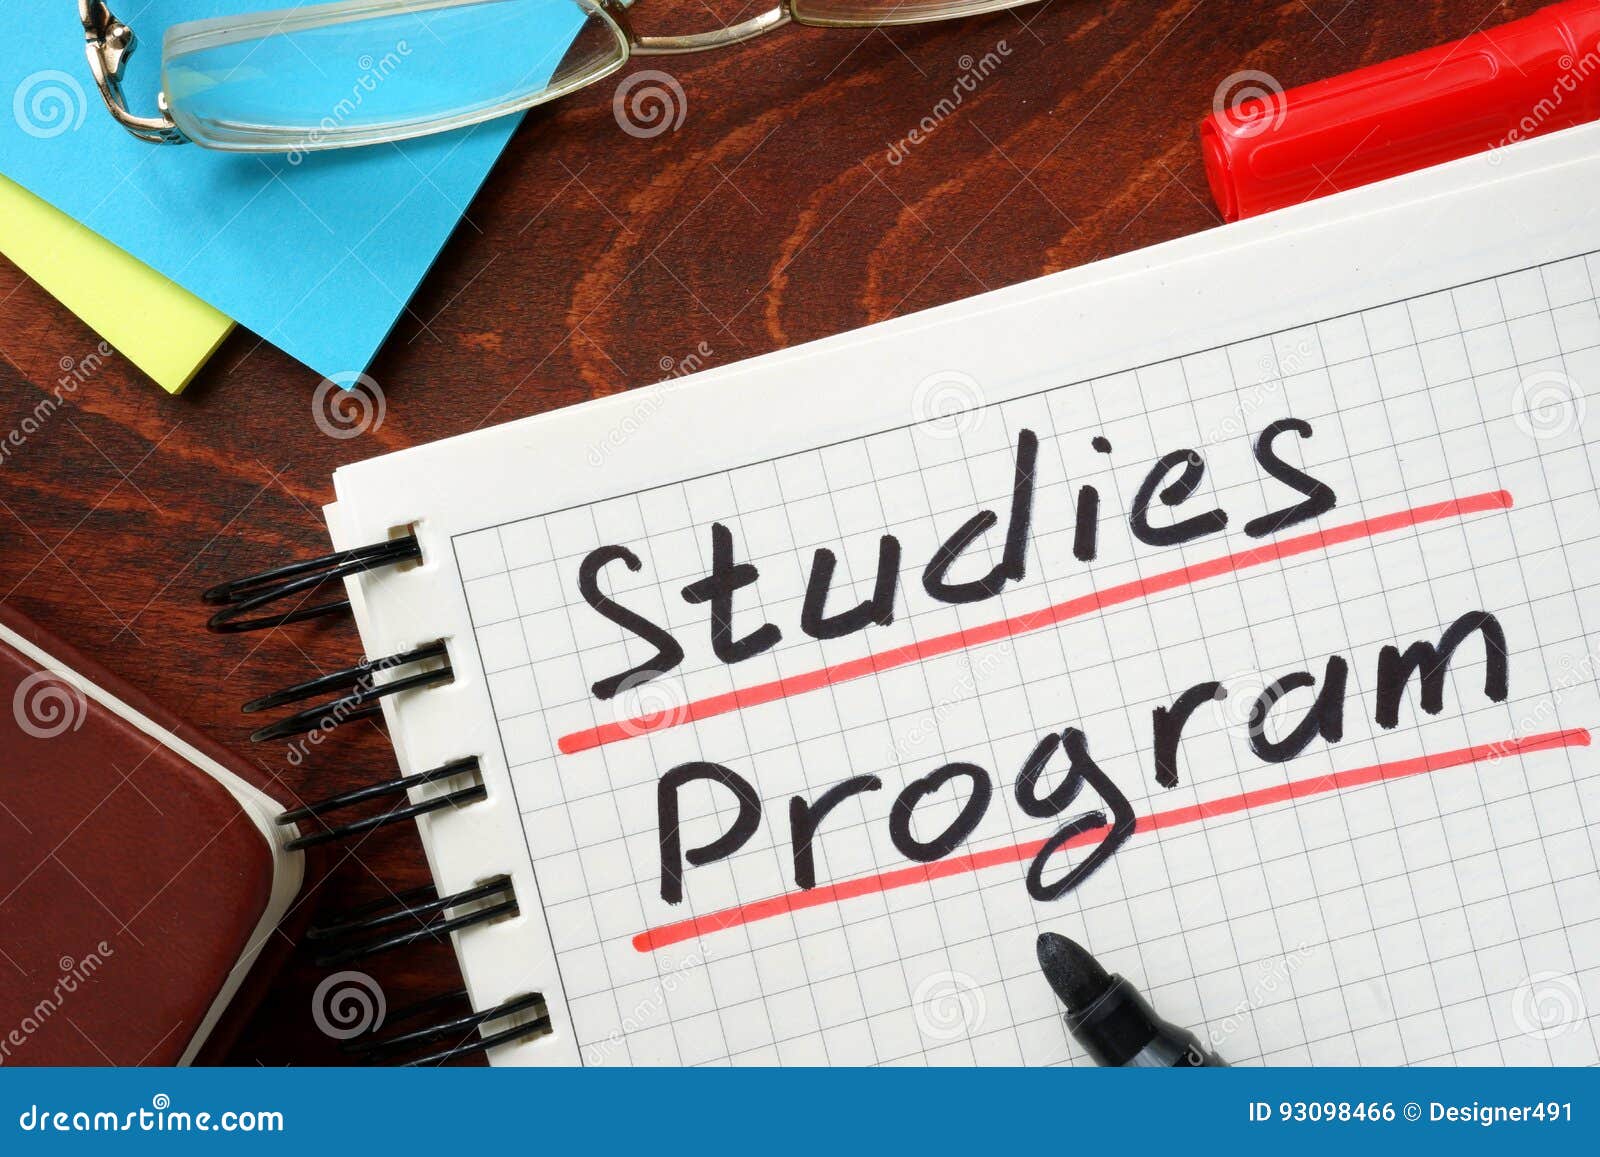 studies program written in a notepad.